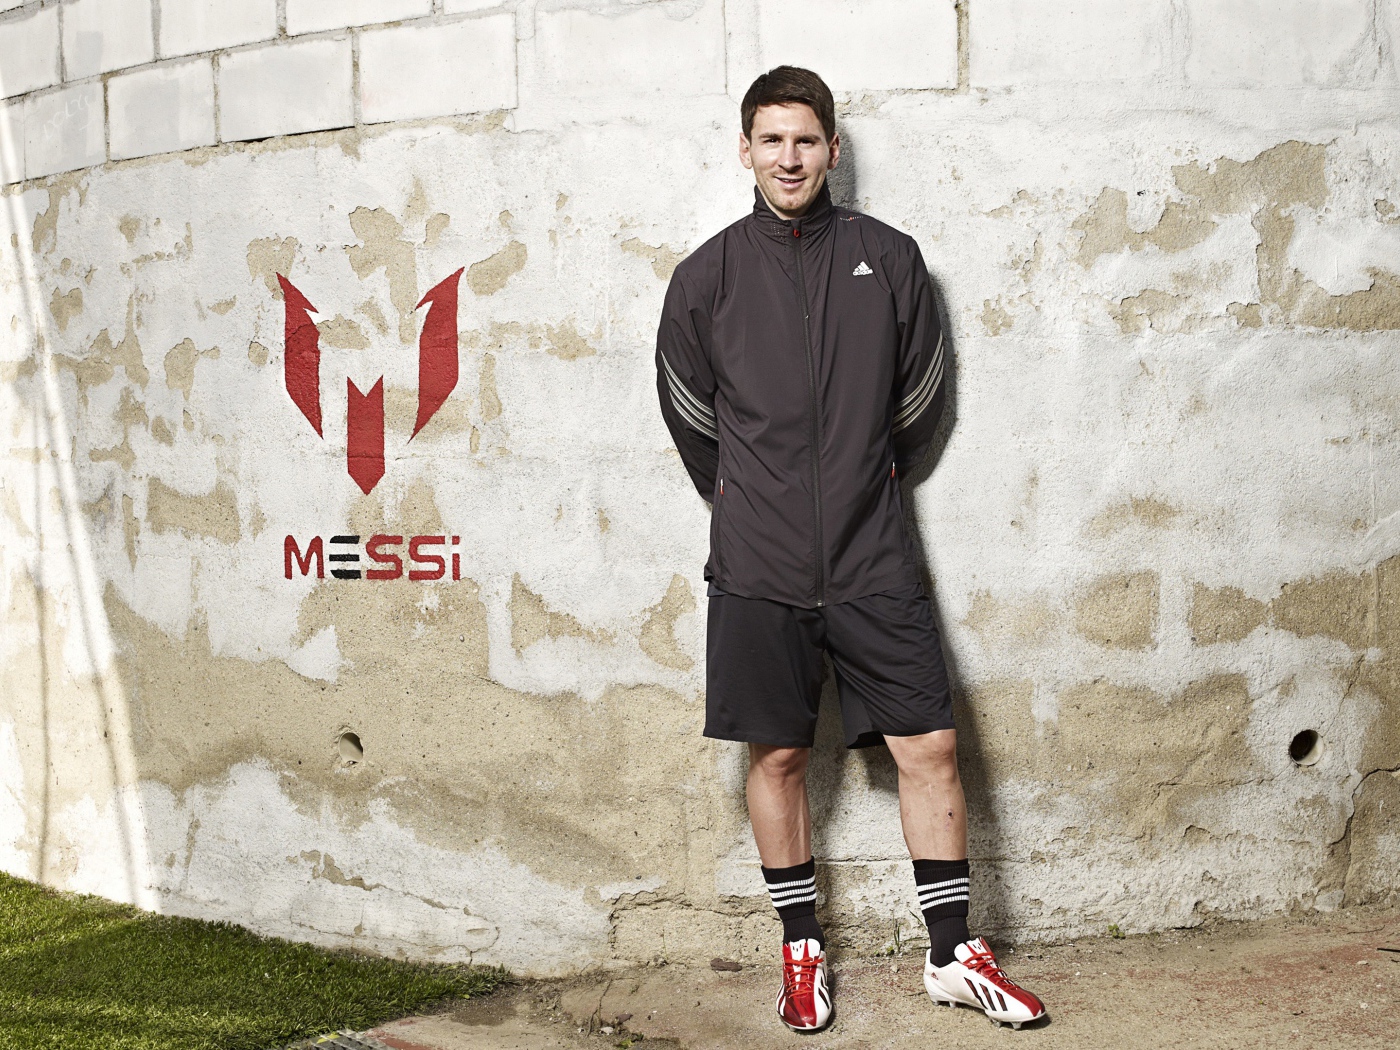 Футболист Лионель Месси позирует  на фоне стены 